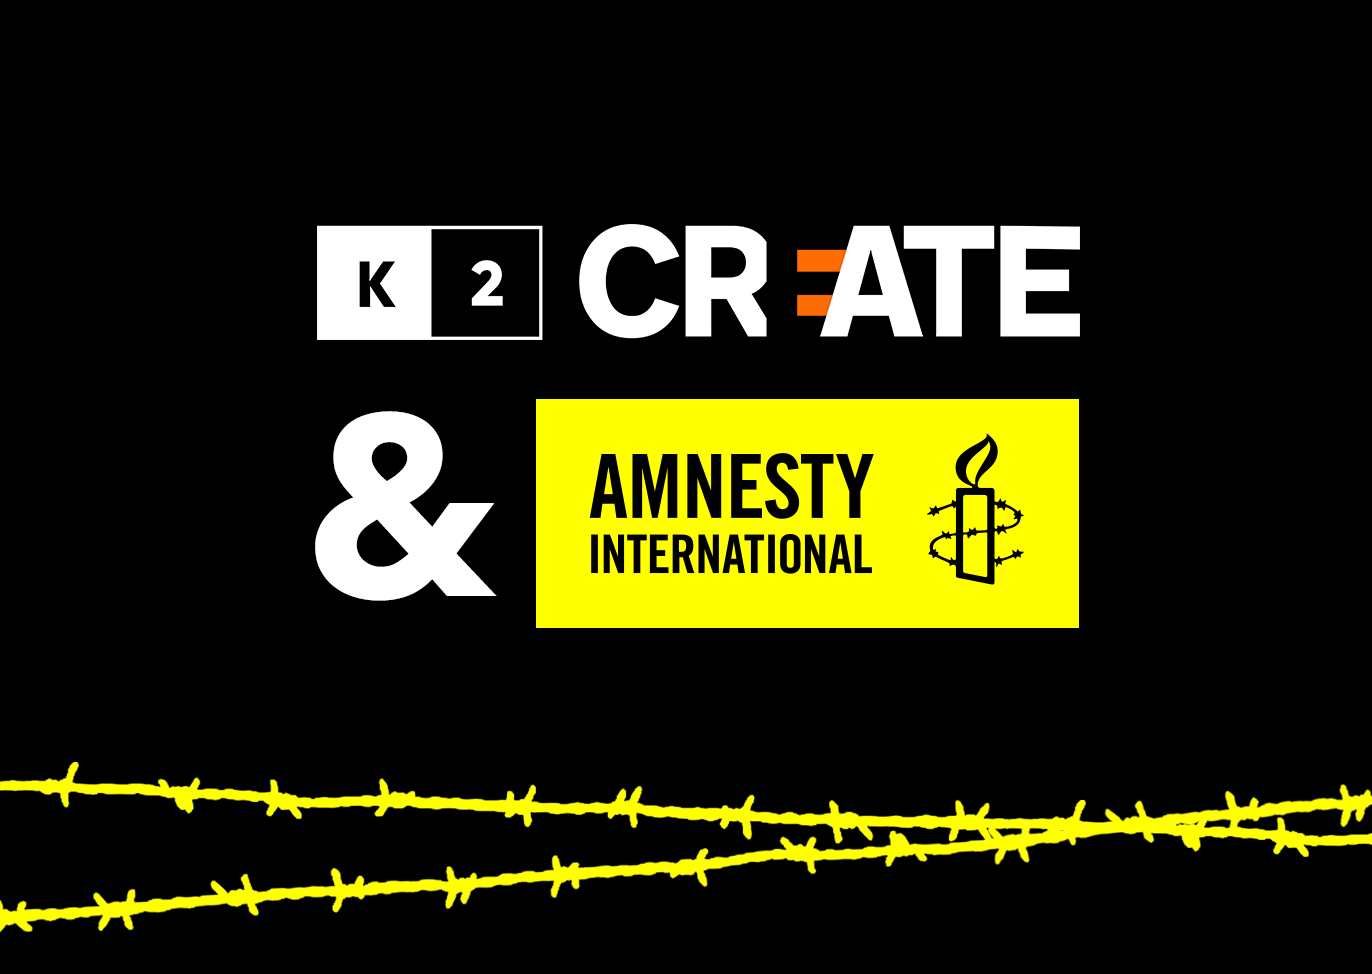 “Prawa człowieka łamane są w ciszy” - K2 Create z nową kampanią wizerunkową dla Amnesty International.